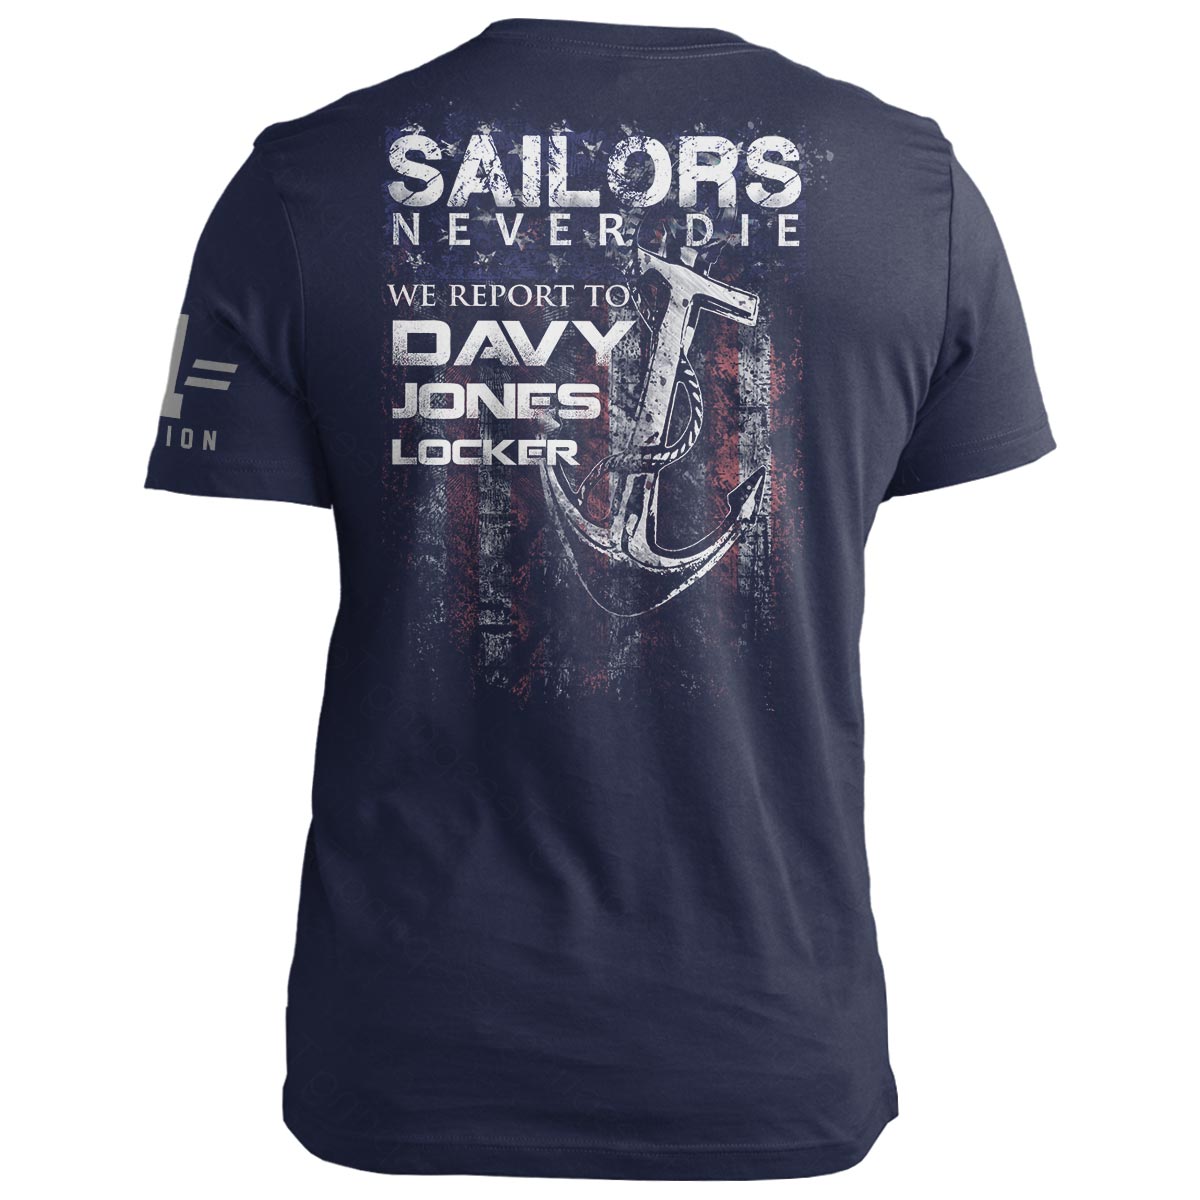 Sailors Never Die...